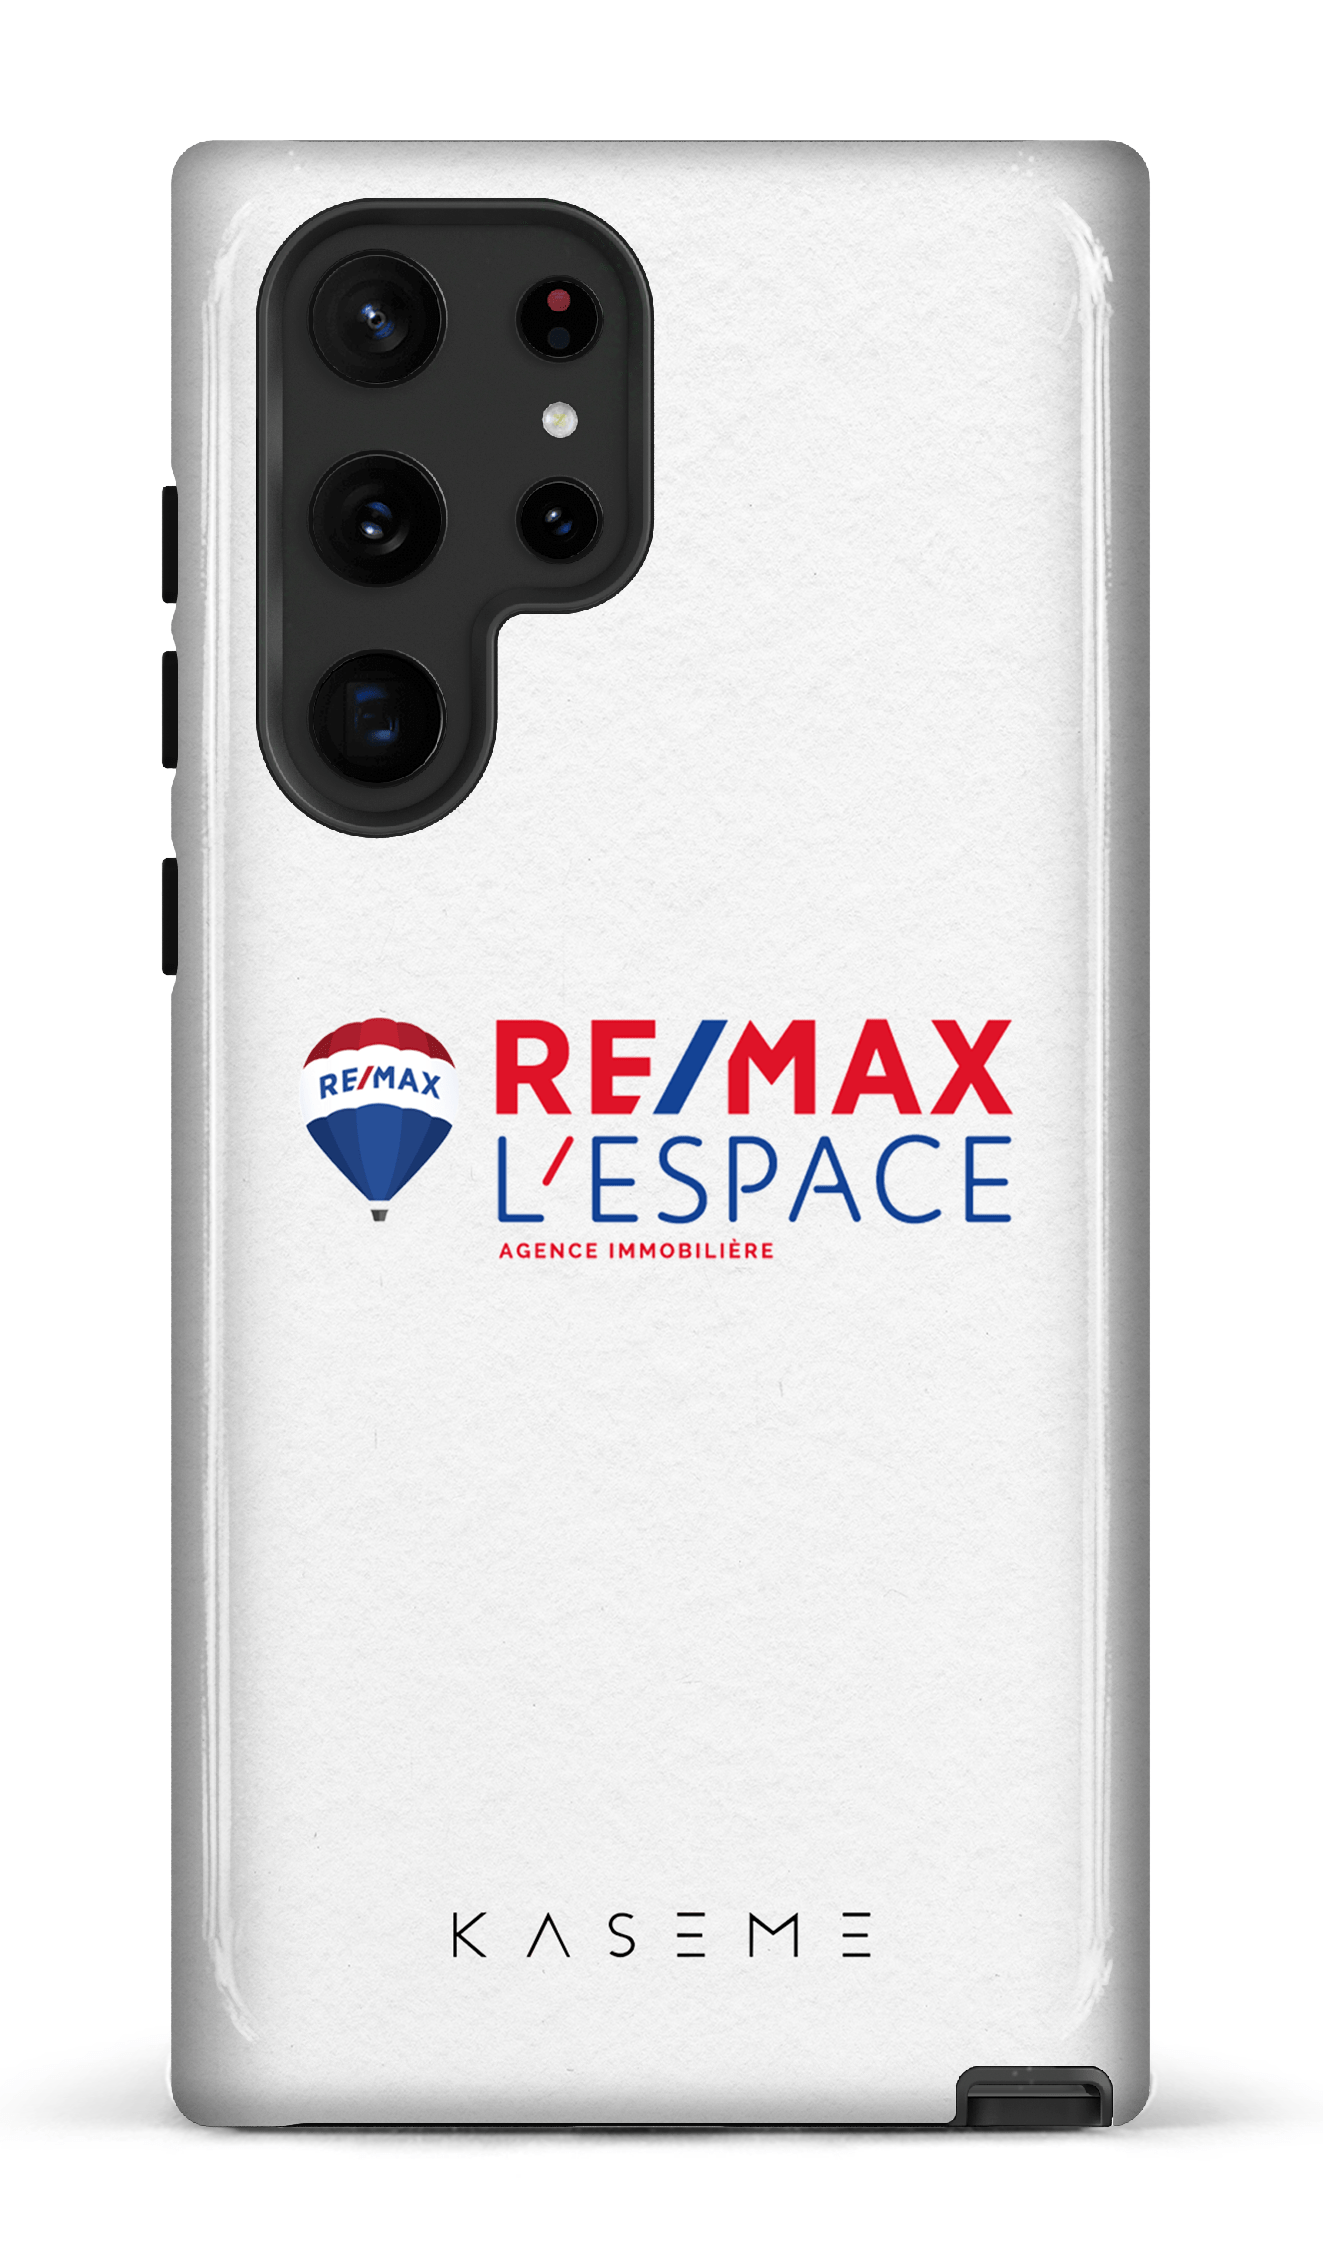 Remax L'Espace Blanc - Galaxy S22 Ultra